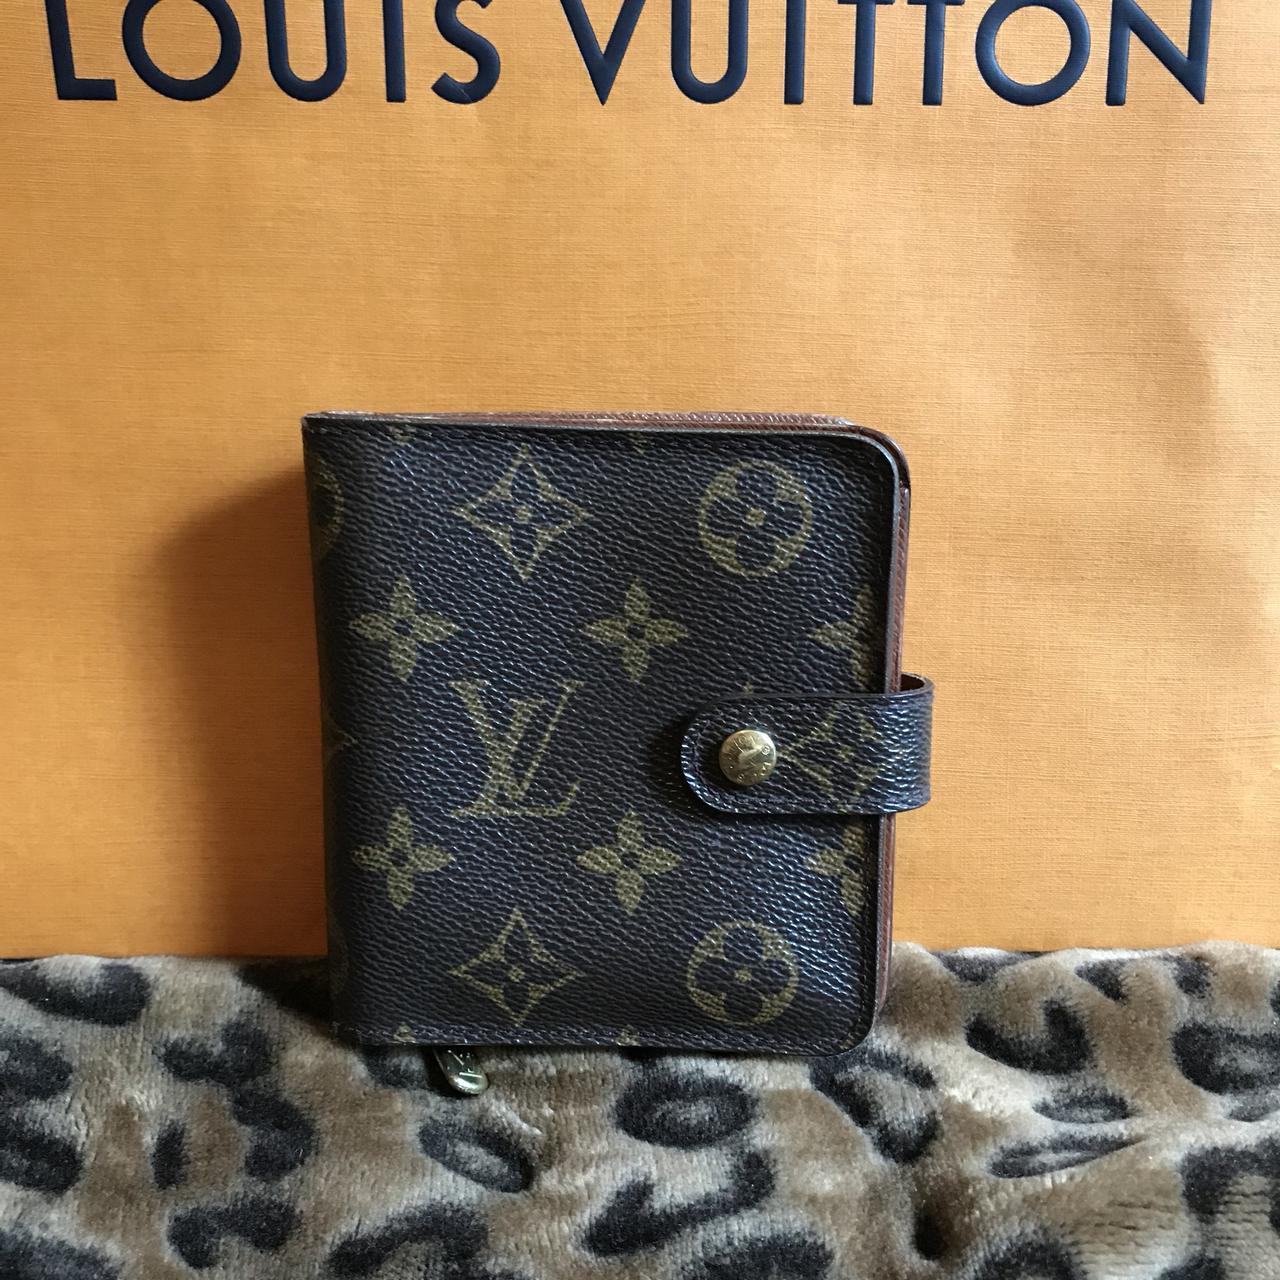 Authentic vintage Louis Vuitton wallet Has some - Depop